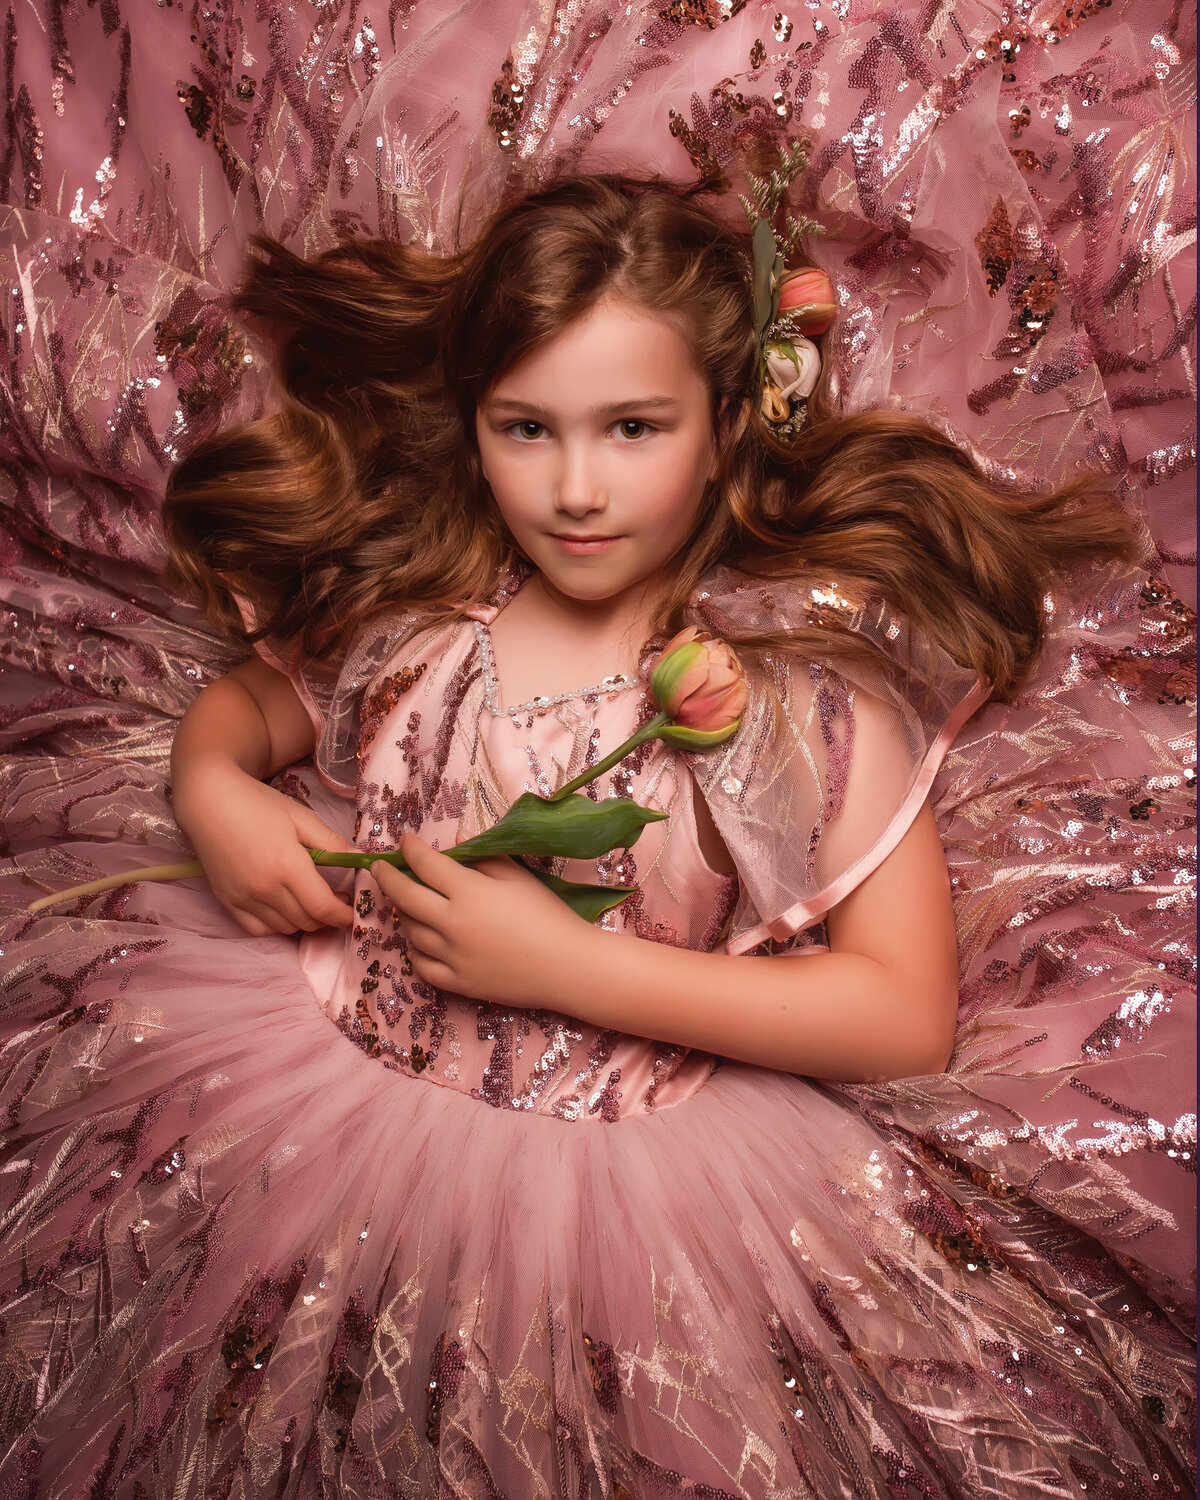 Beautiful child wearing pink dress